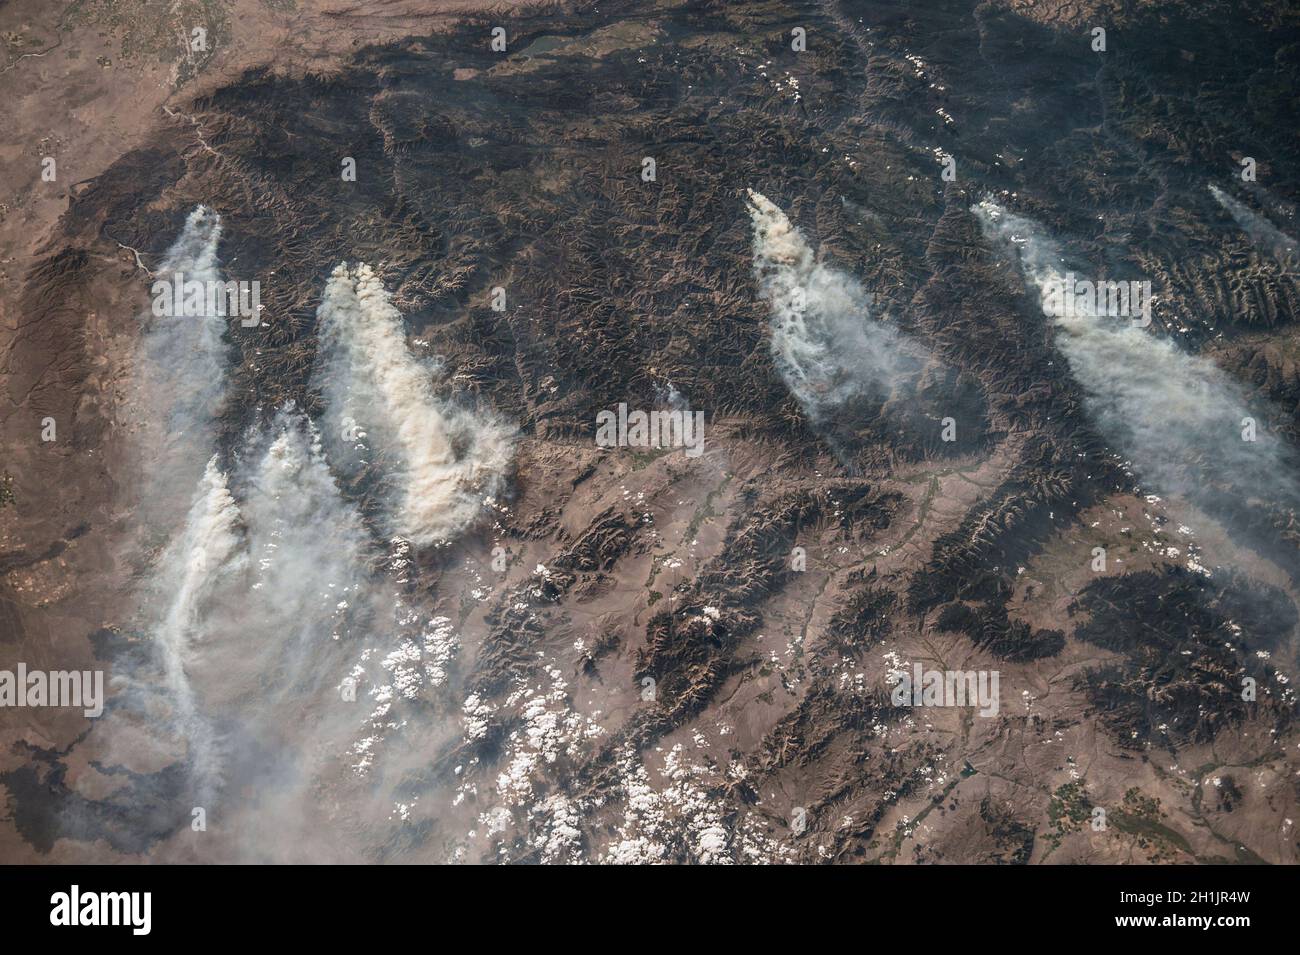 La Tierra vista desde la Estación Espacial Internacional: Idaho, Estados Unidos. Agosto de 2013. Las zonas oscuras son todas montañas boscosas. Dentro de esta región montañosa, se pueden observar varios incendios que producen extensos penachos de humo, la mayoría de ellos provocados por un rayo. Esta imagen muestra el patrón común de vientos occidentales que transportan humo en dirección este. Una versión optimizada y mejorada de una imagen de NASA / crédito de la NASA. Foto de stock